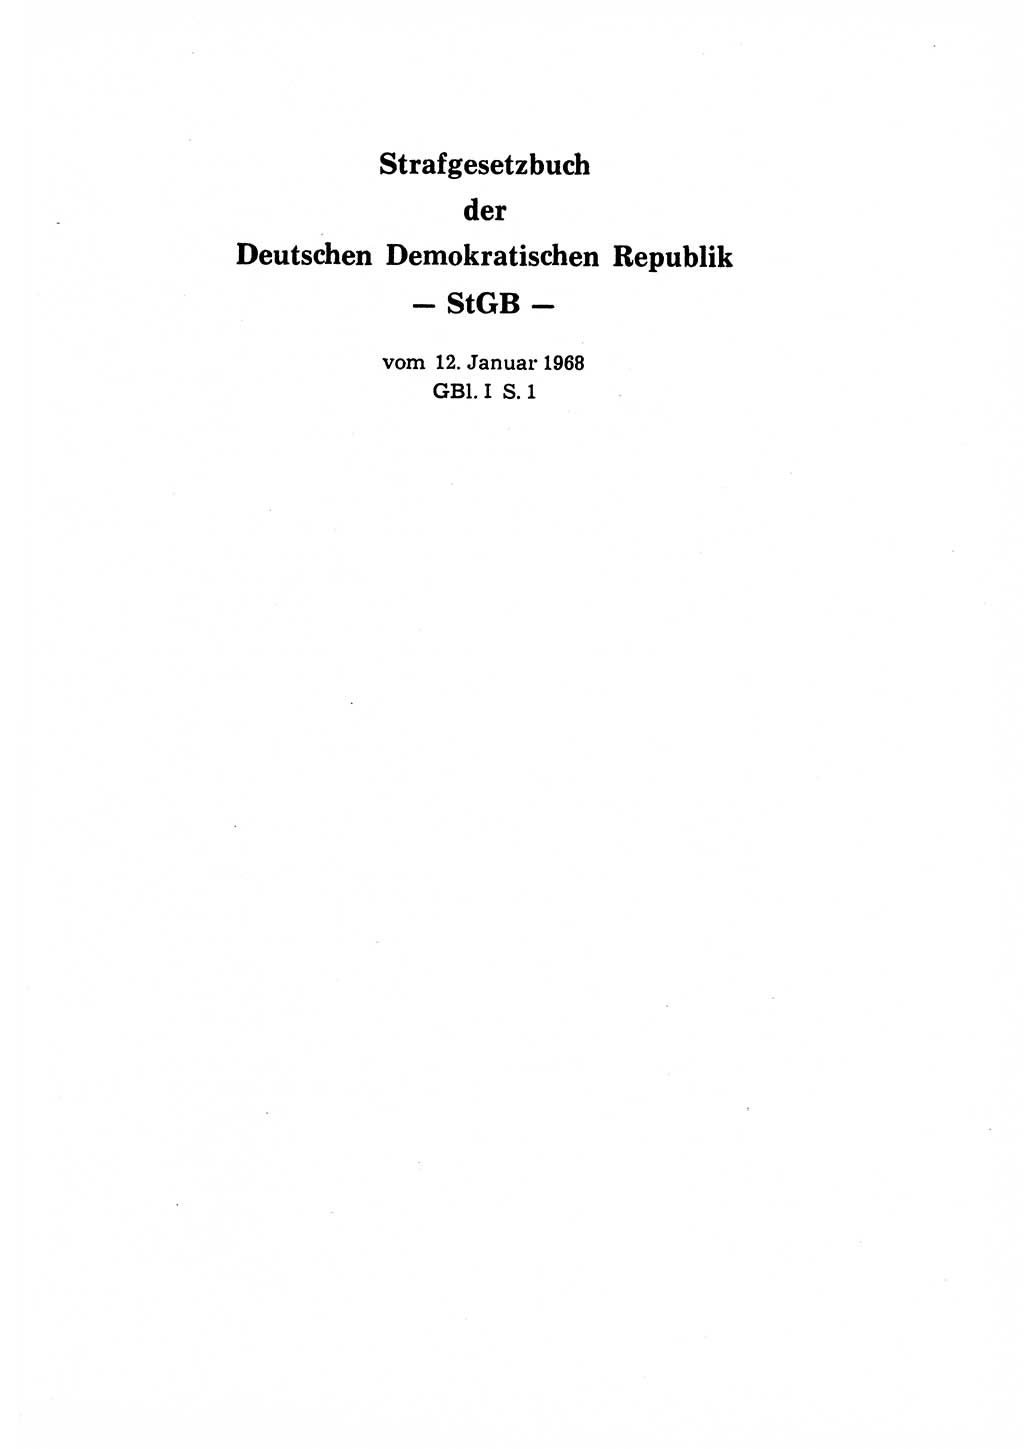 Strafrecht der Deutschen Demokratischen Republik (DDR), Lehrkommentar zum Strafgesetzbuch (StGB), Allgemeiner Teil 1970, Seite 31 (Strafr. DDR Lehrkomm. StGB AT 1970, S. 31)